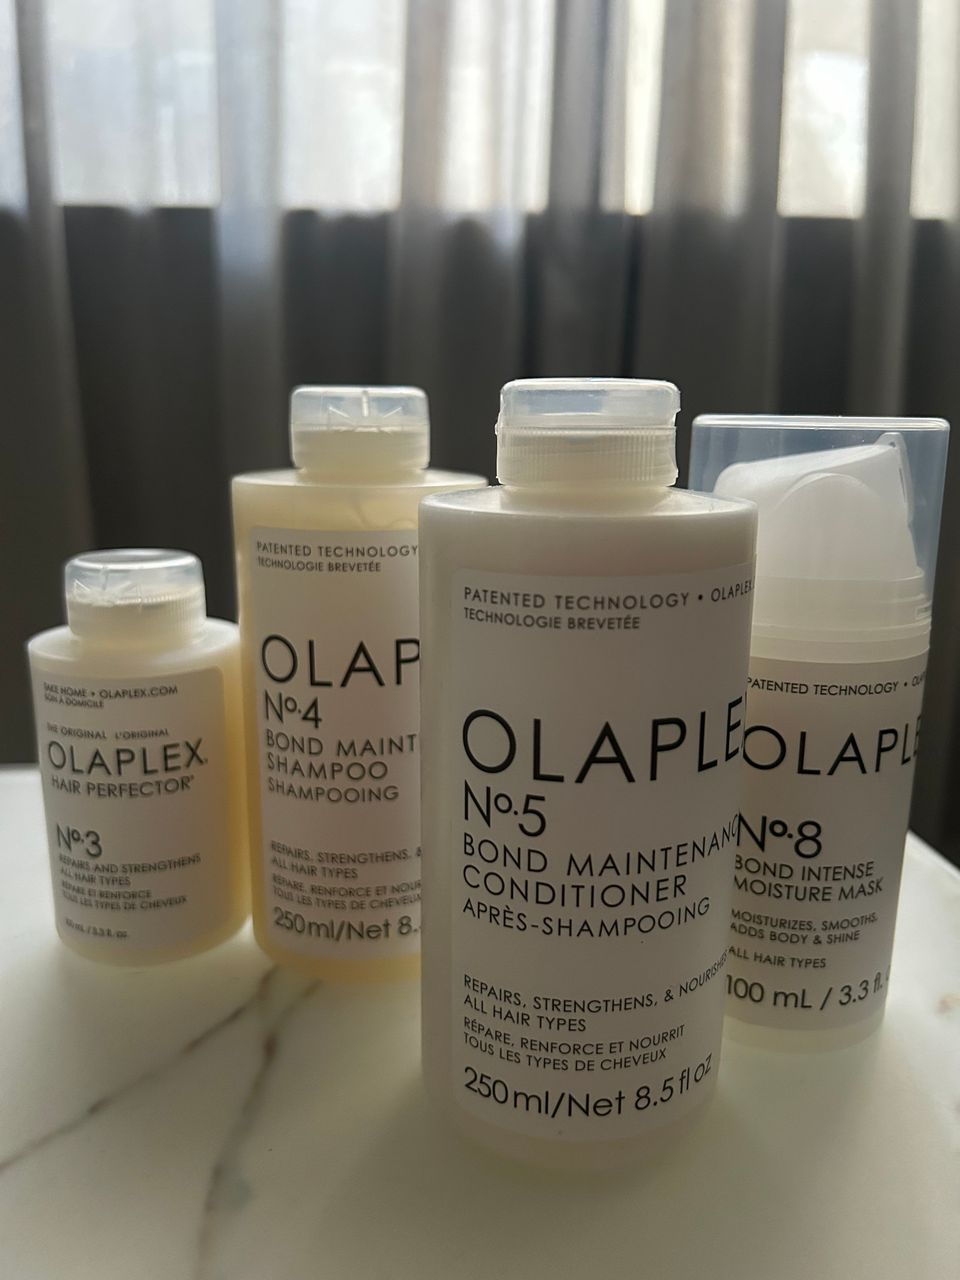 Avaamattomat Olaplex-tuotteet